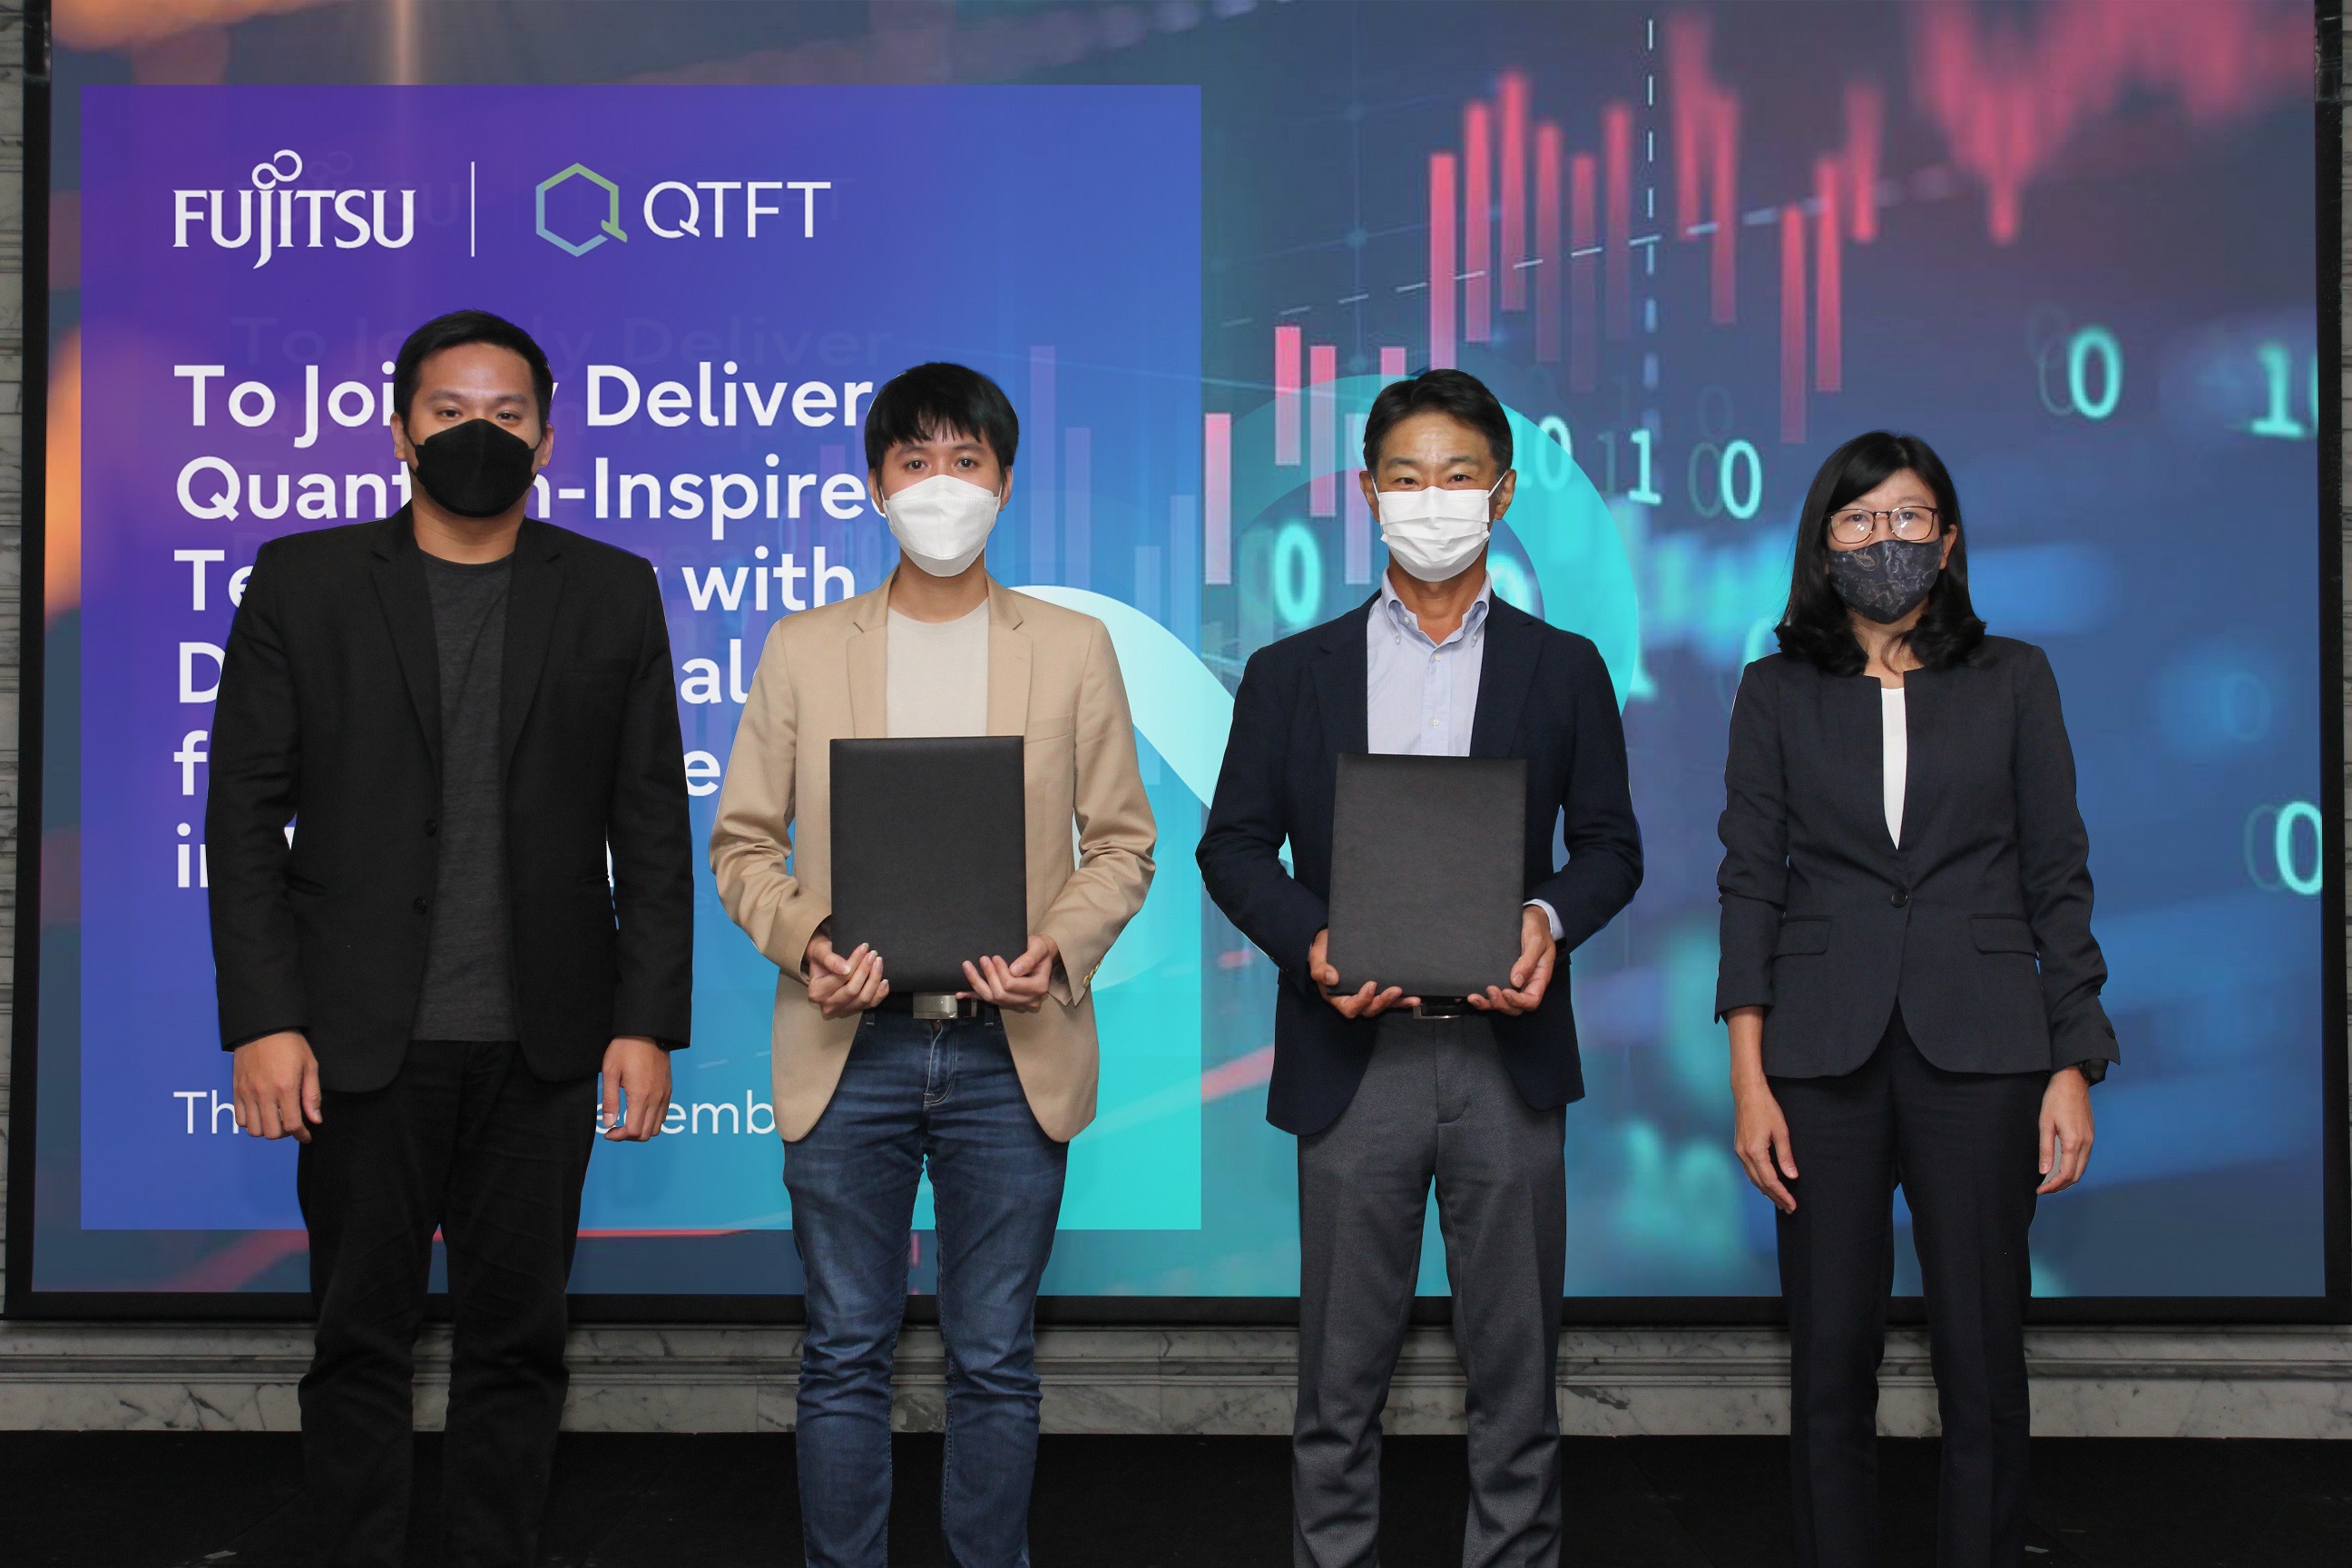 ฟูจิตสึ ประเทศไทยร่วมลงนามข้อตกลงกับ QTFT ส่งมอบเทคโนโลยีที่ได้รับแรงบันดาลใจจากควอนตัม  ด้วย Digital Annealer เป็นครั้งแรกในประเทศไทย